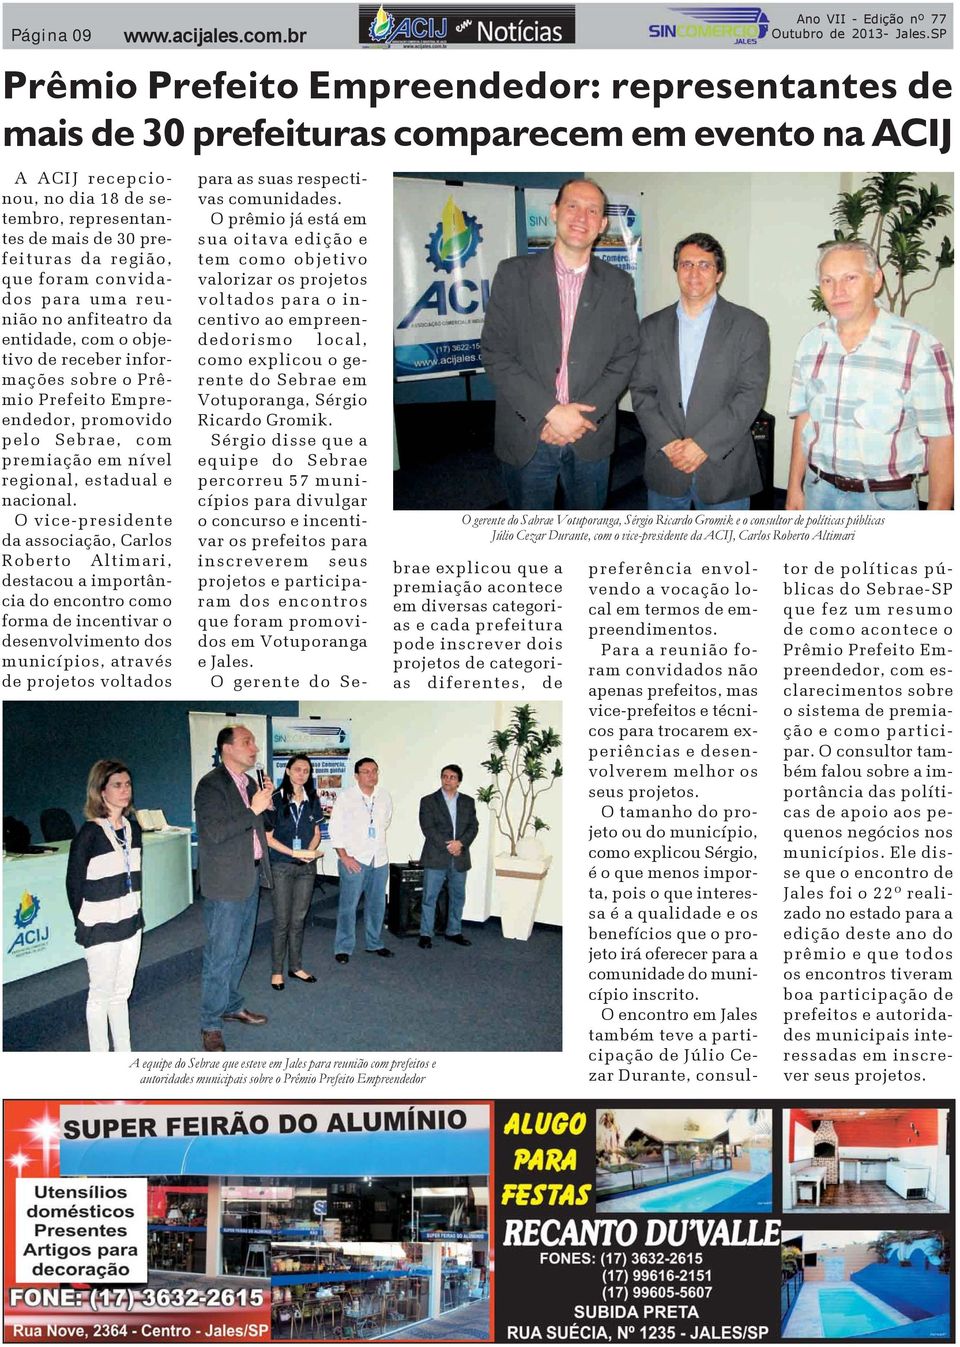 O vice-presidente da associação, Carlos Roberto Altimari, destacou a importância do encontro como forma de incentivar o desenvolvimento dos municípios, através de projetos voltados Prêmio Prefeito